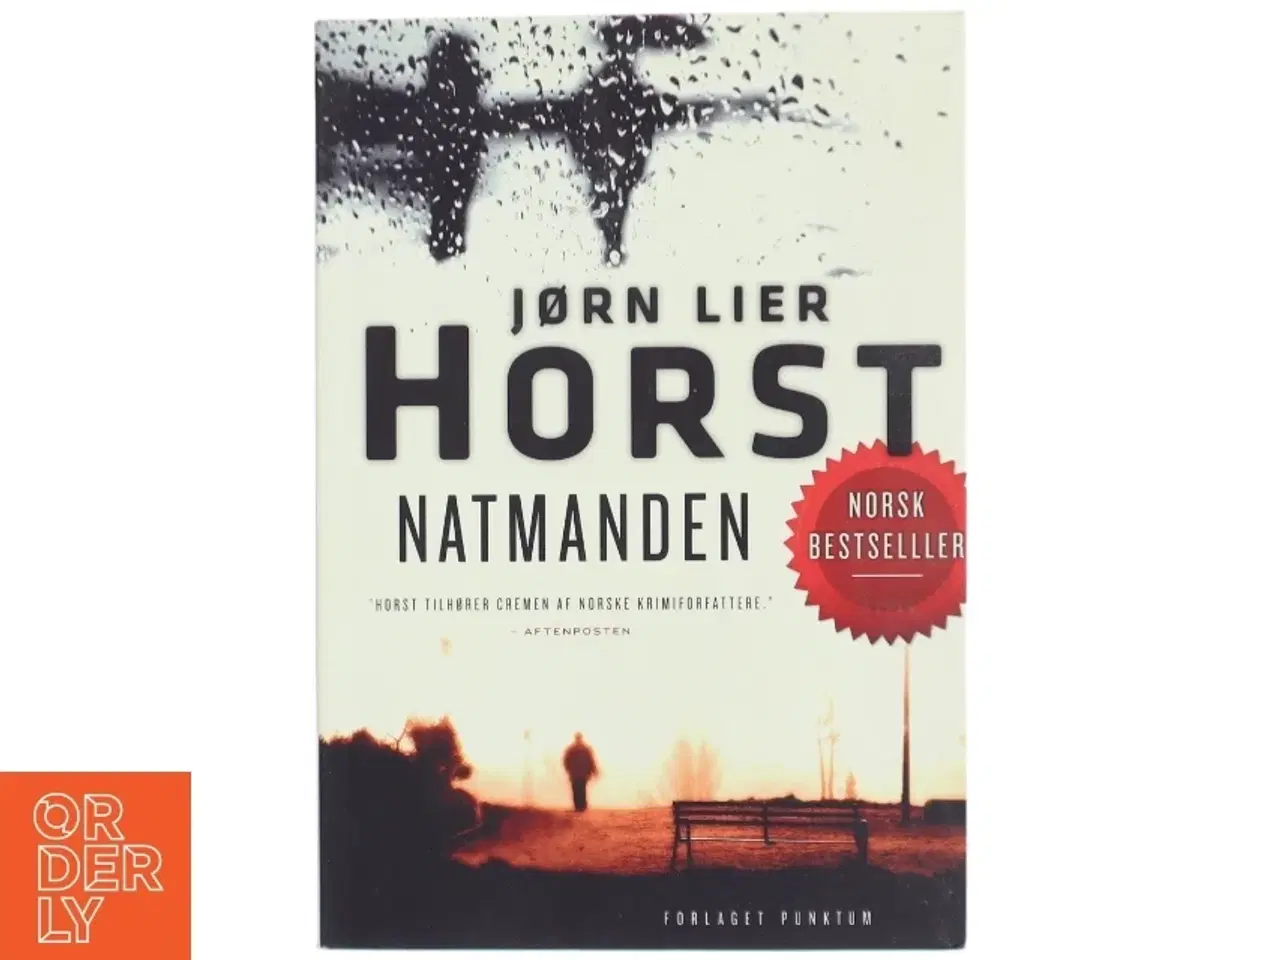 Billede 1 - 'Natmanden' af Jørn Lier Horst (bog)